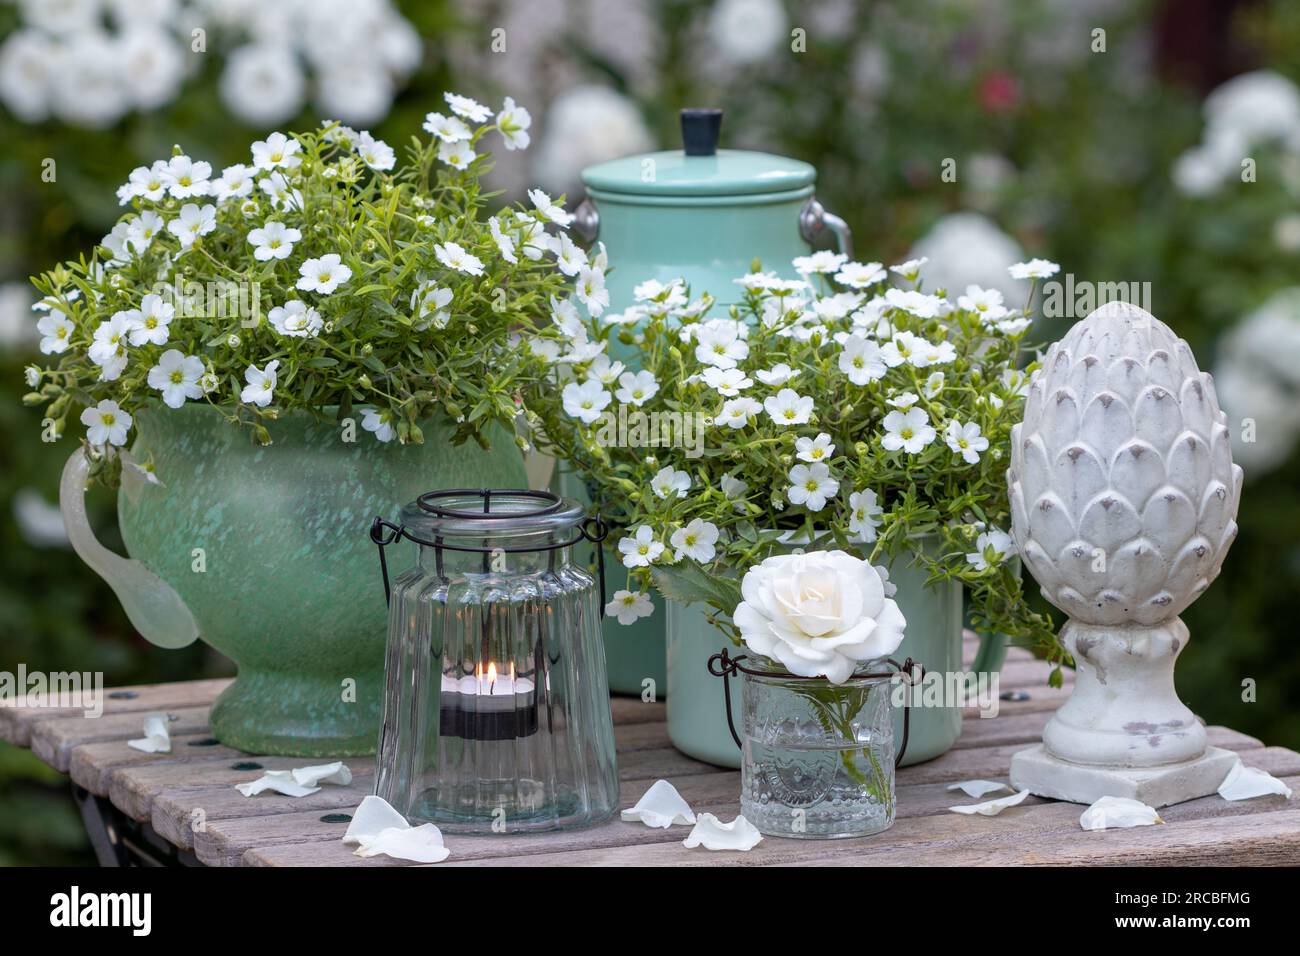 Sommergartendekoration mit weißer Rose im Glas, Bergsandmaische in Töpfen und Tischlaterne Stockfoto